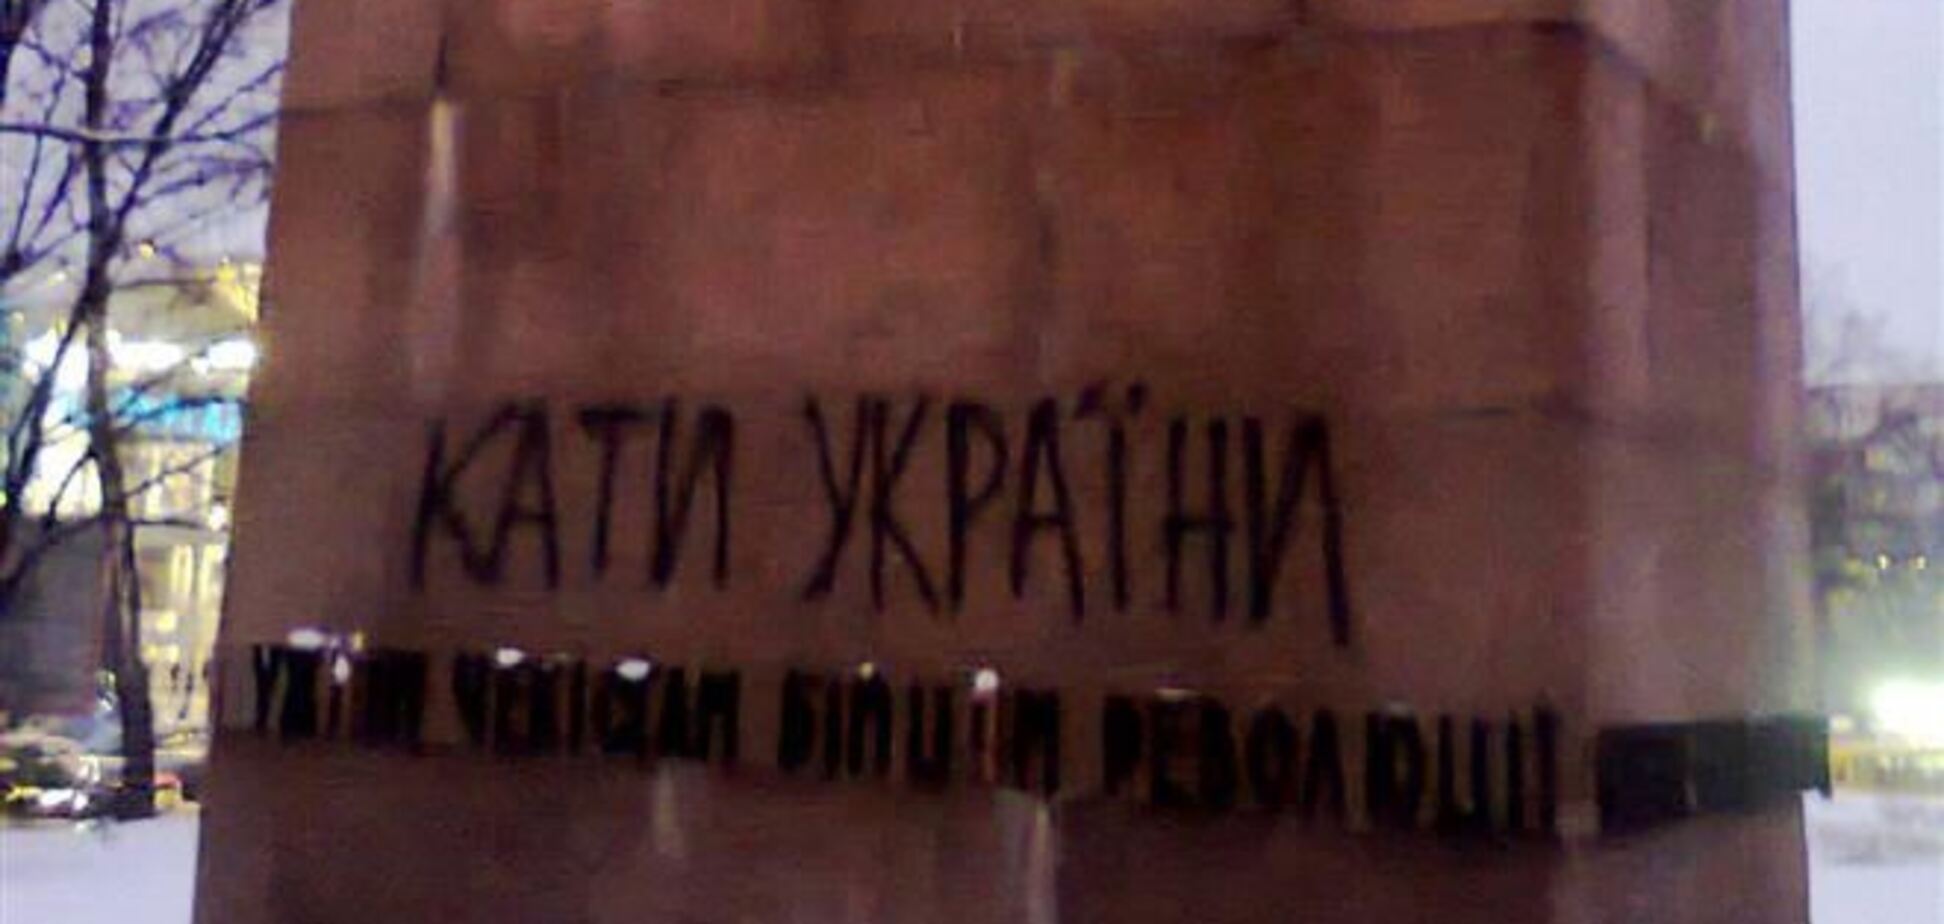 Вандалы расписали памятник чекистам в Киеве